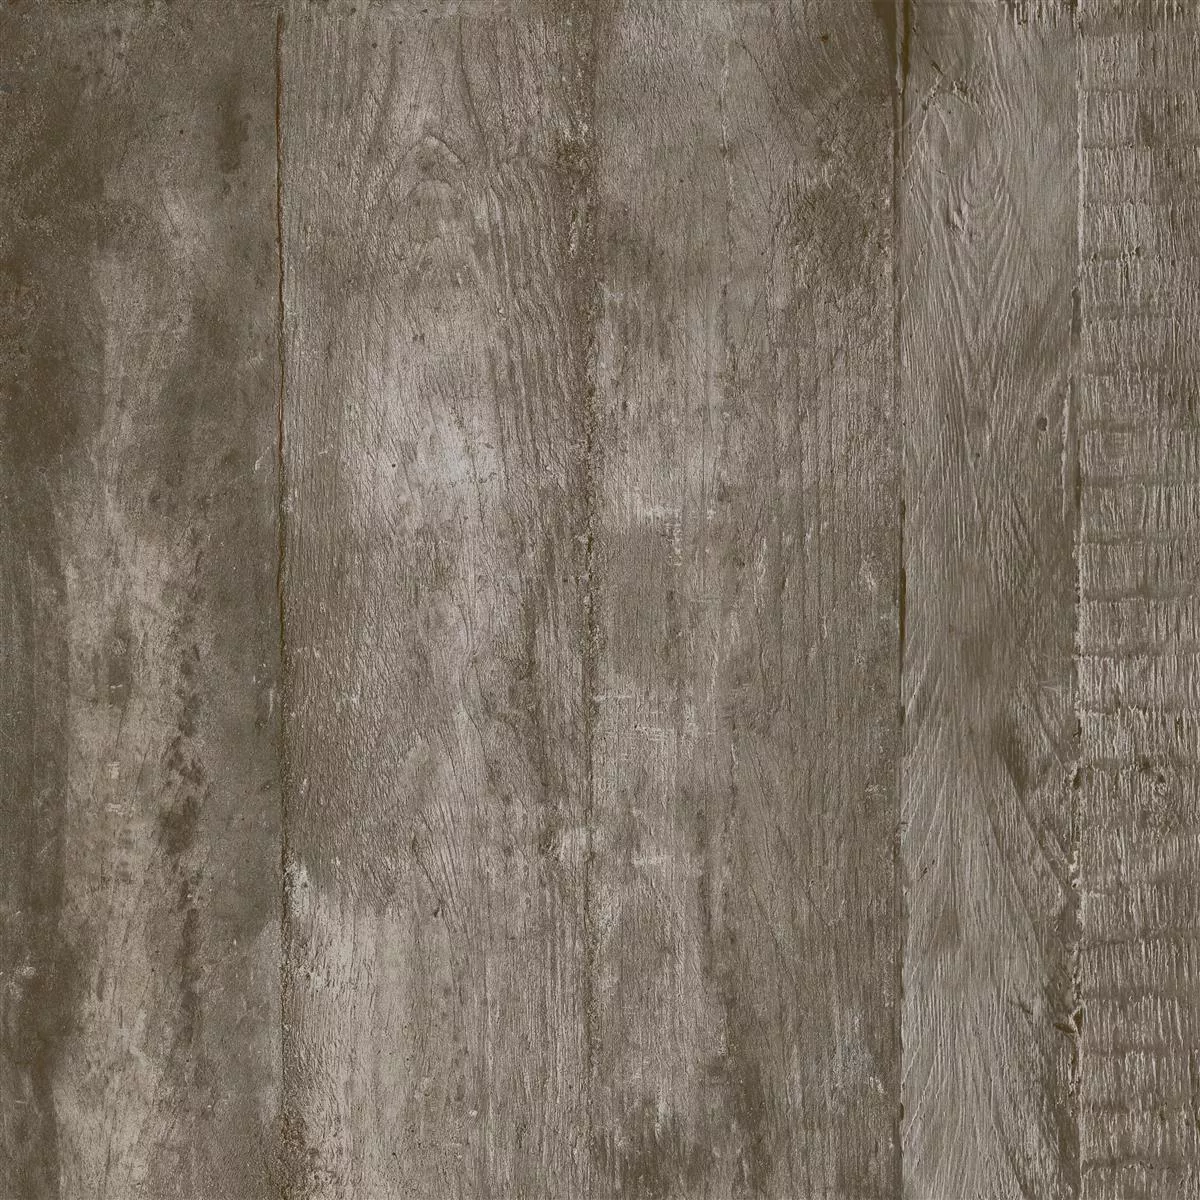 Próbka Płytki Podłogowe Gorki Wygląd Drewna 60x60cm Oszklony Brązowy